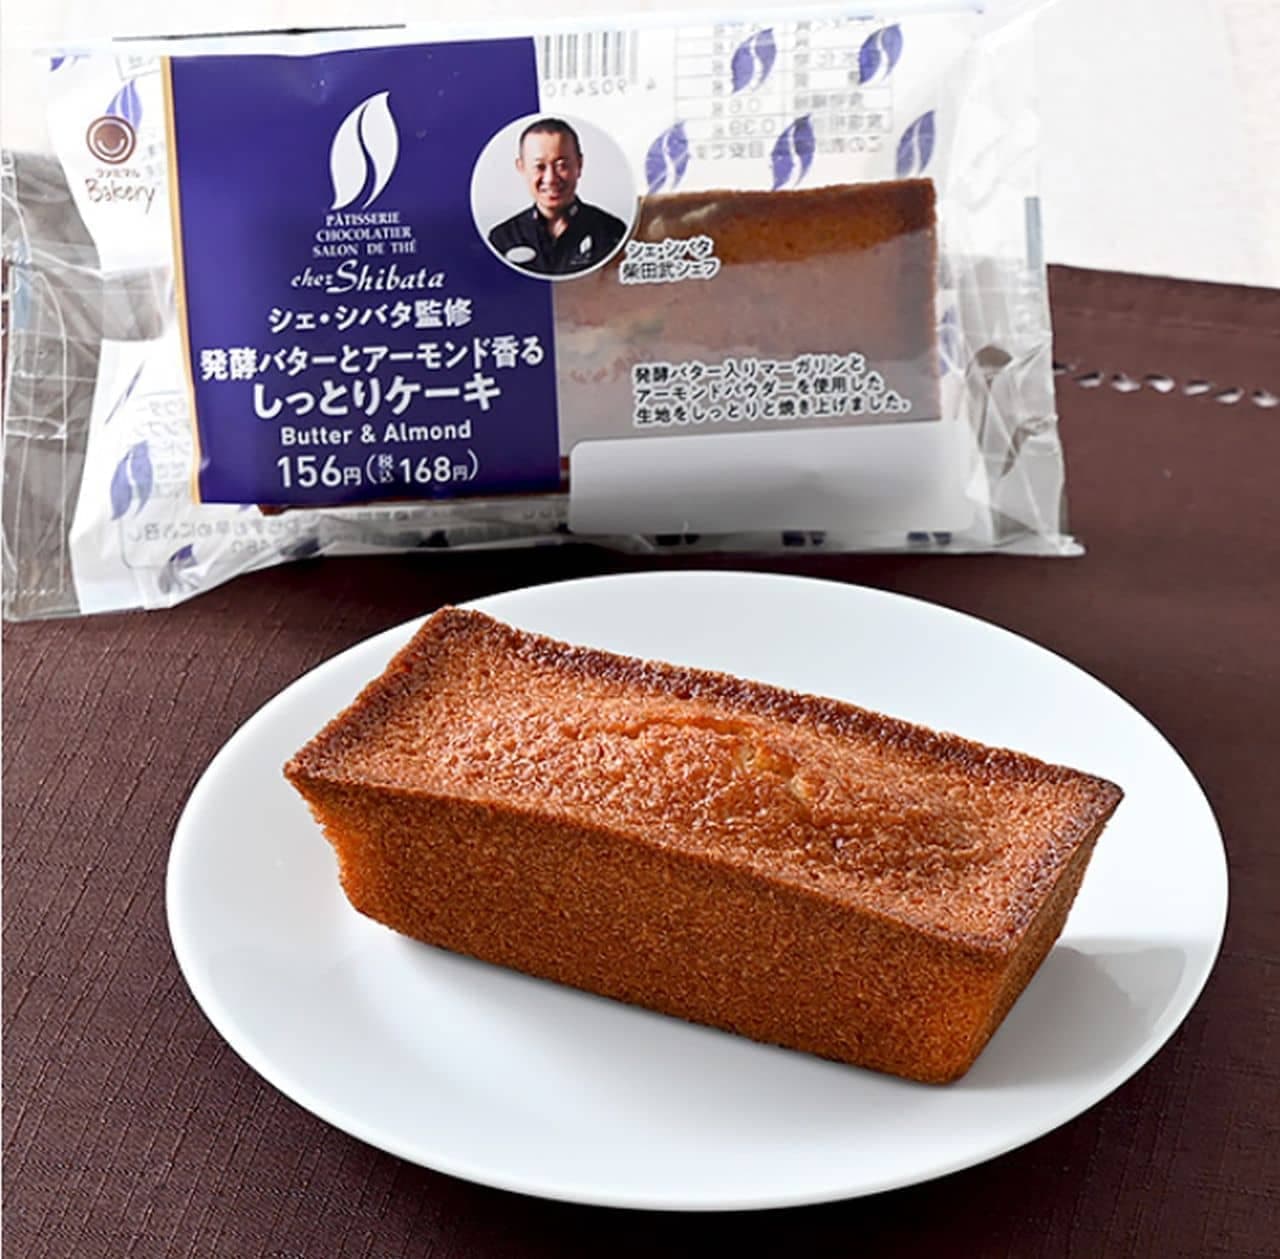 ファミリーマート「【東海・北陸】シェ・シバタ監修 発酵バターとアーモンド香るしっとりケーキ」